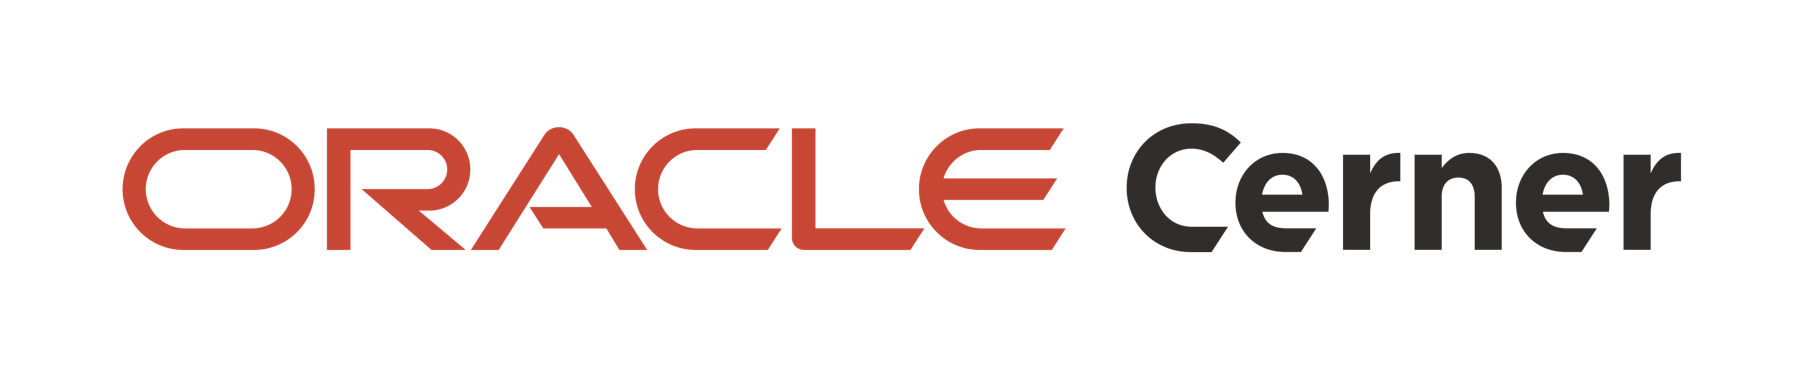 Oracle Cerner Horizontal